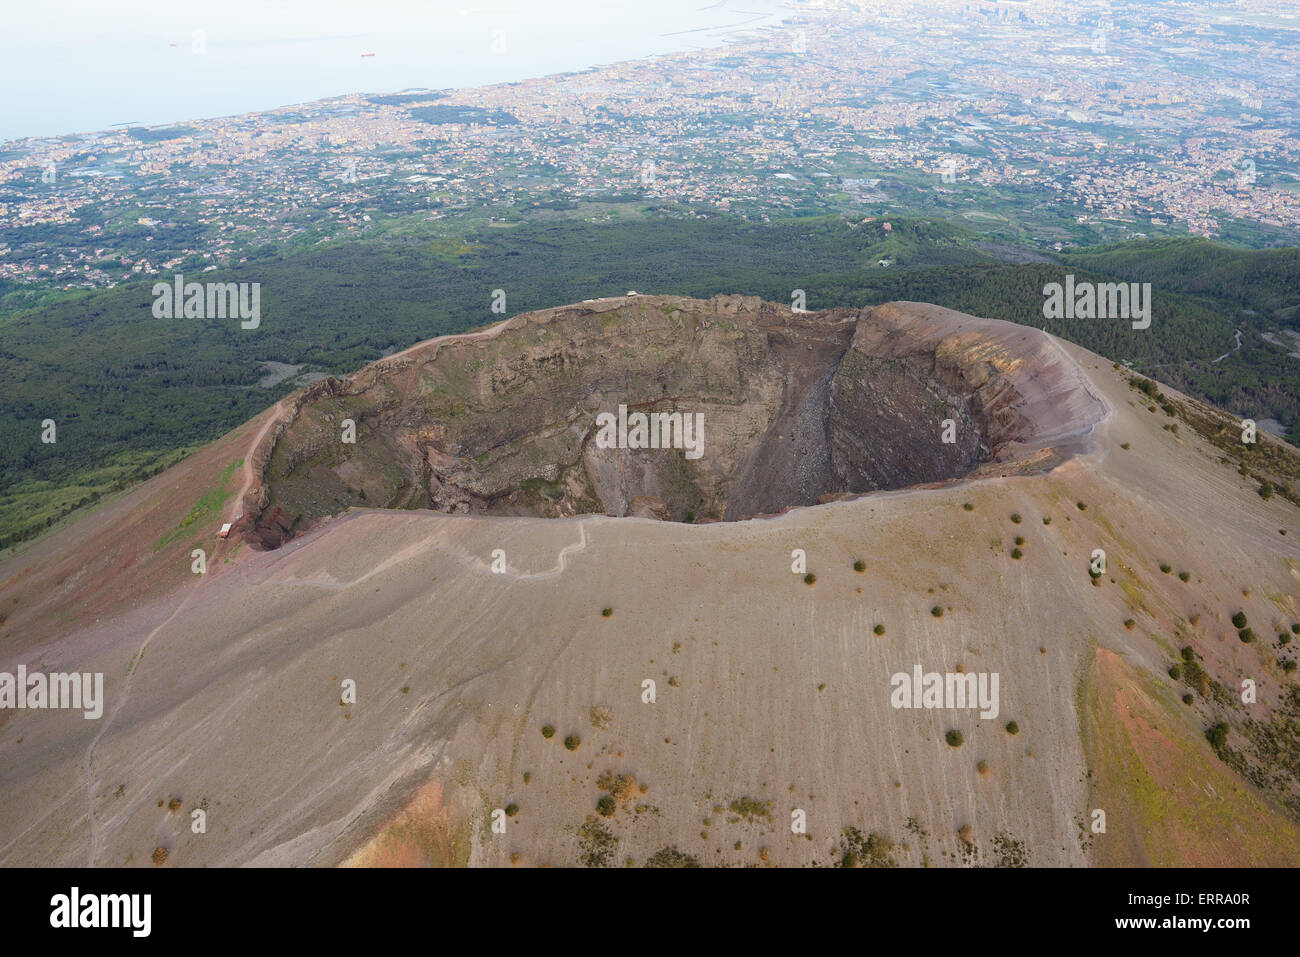 VISTA AEREA. Il Vesuvio (altitudine: 1281 metri) si affaccia sulla città di Napoli (livello del mare). Campania, Italia. Foto Stock